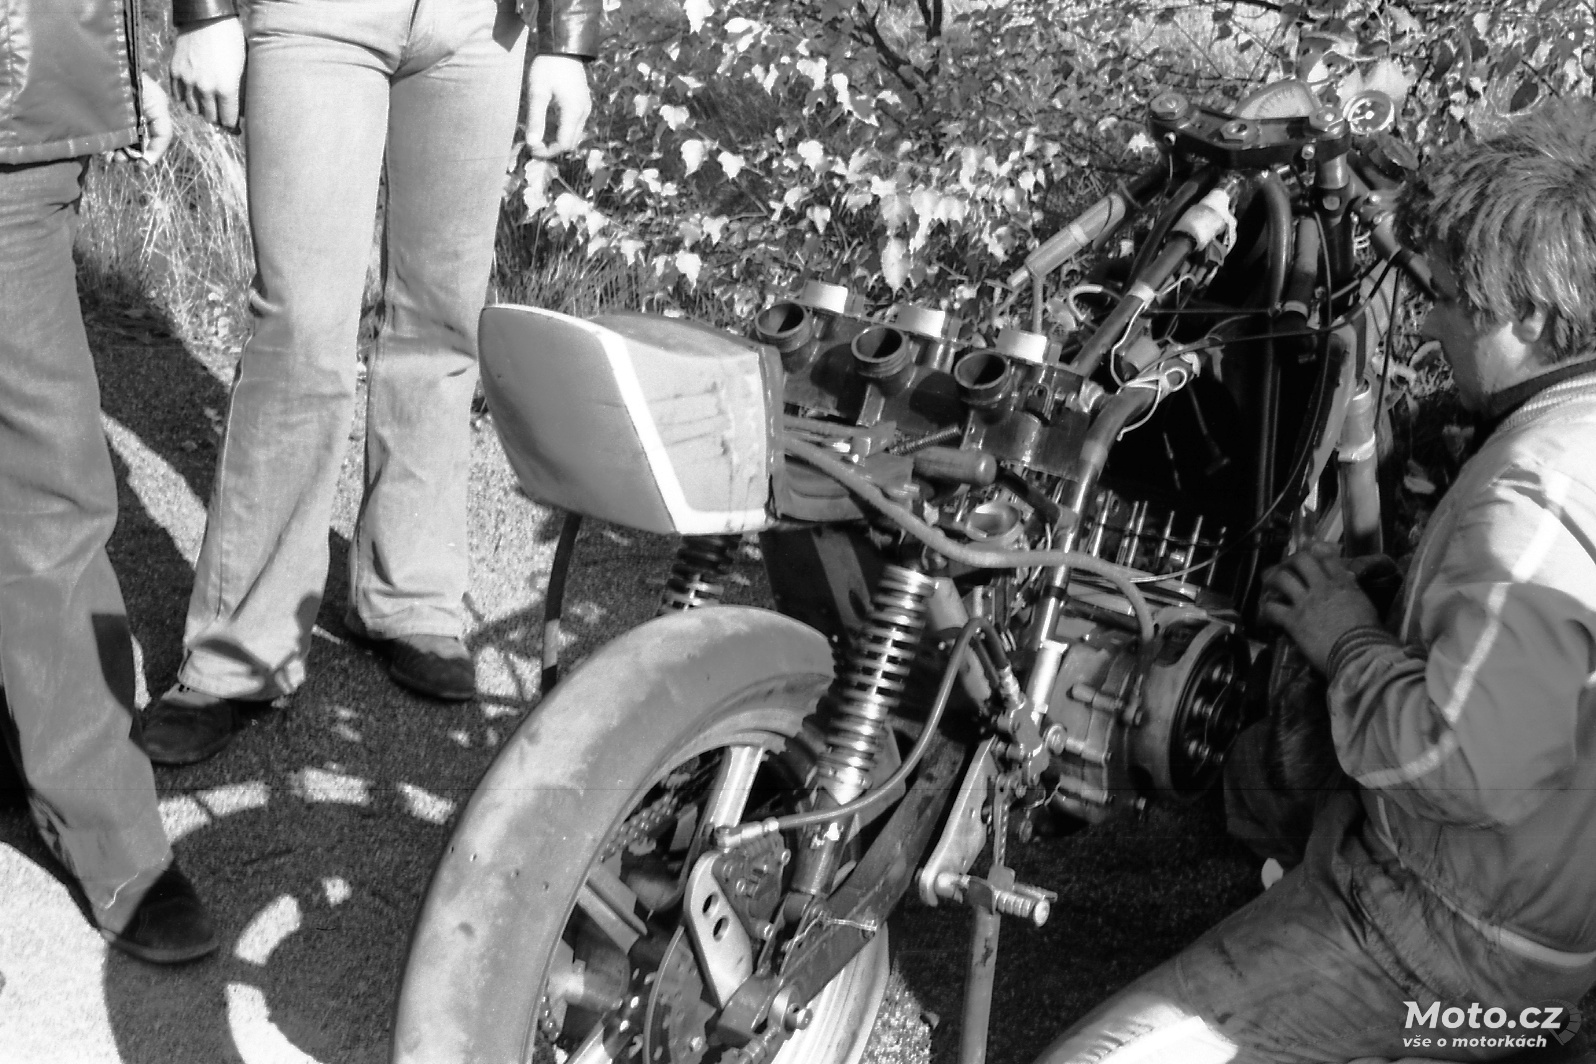 032 - MS 350 - motocykl M. Stružky 